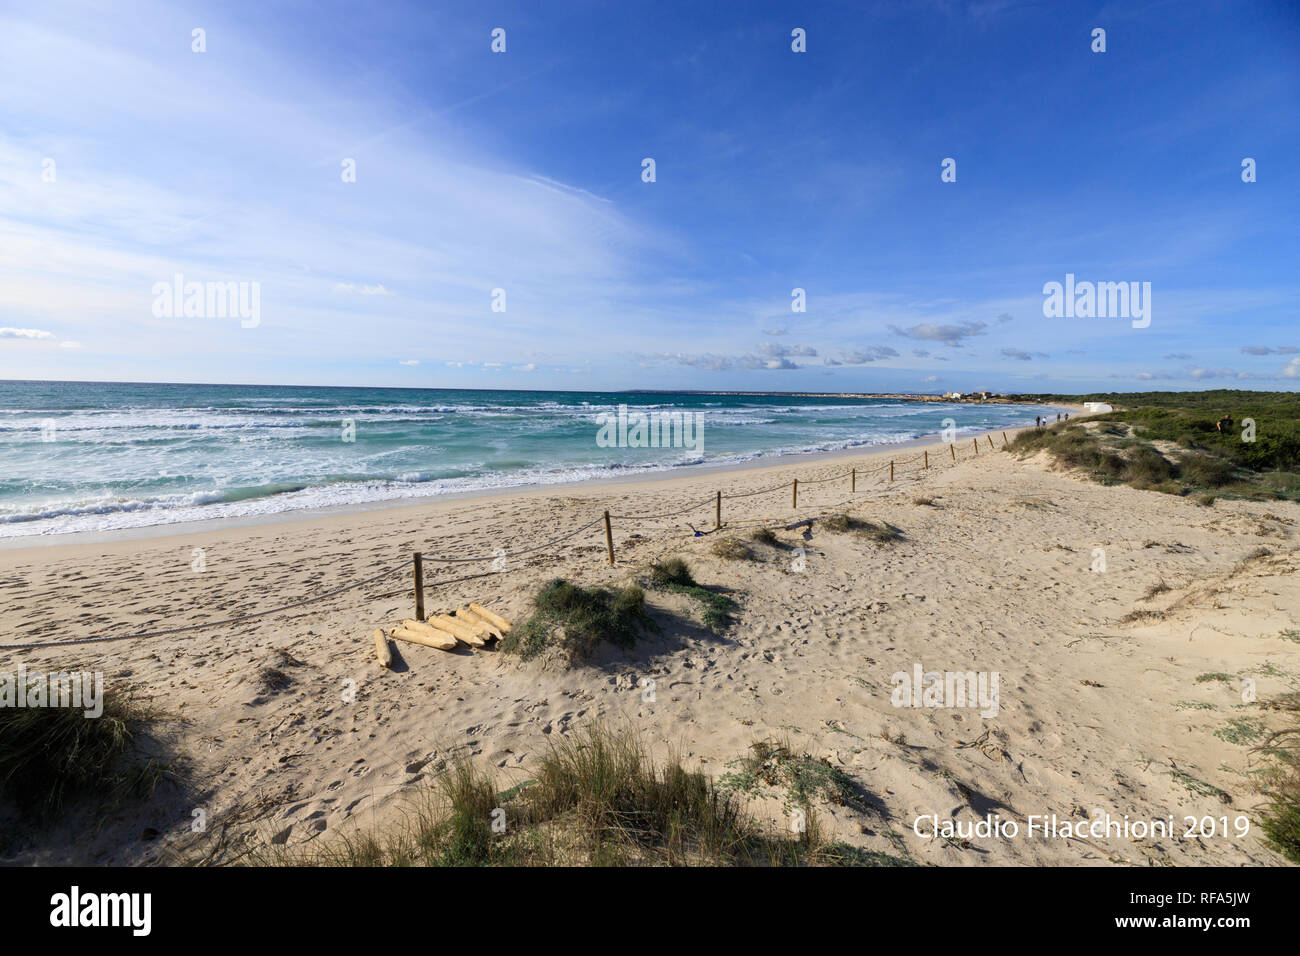 Vague sur le rivage de sable, mer Méditerranée propre seascape Es Trenc Mallorca Espagne Banque D'Images